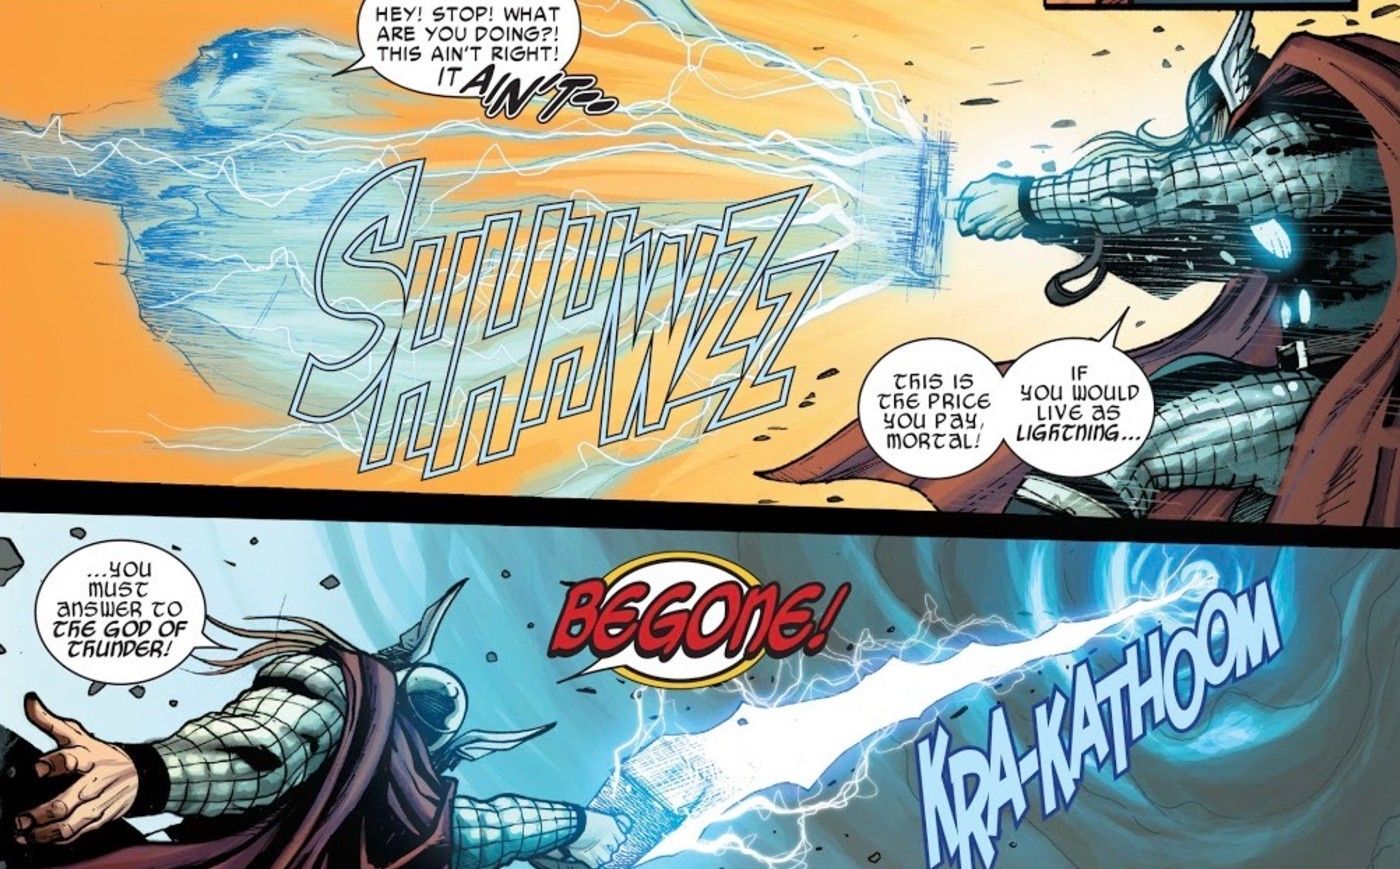 Electro versus Thor